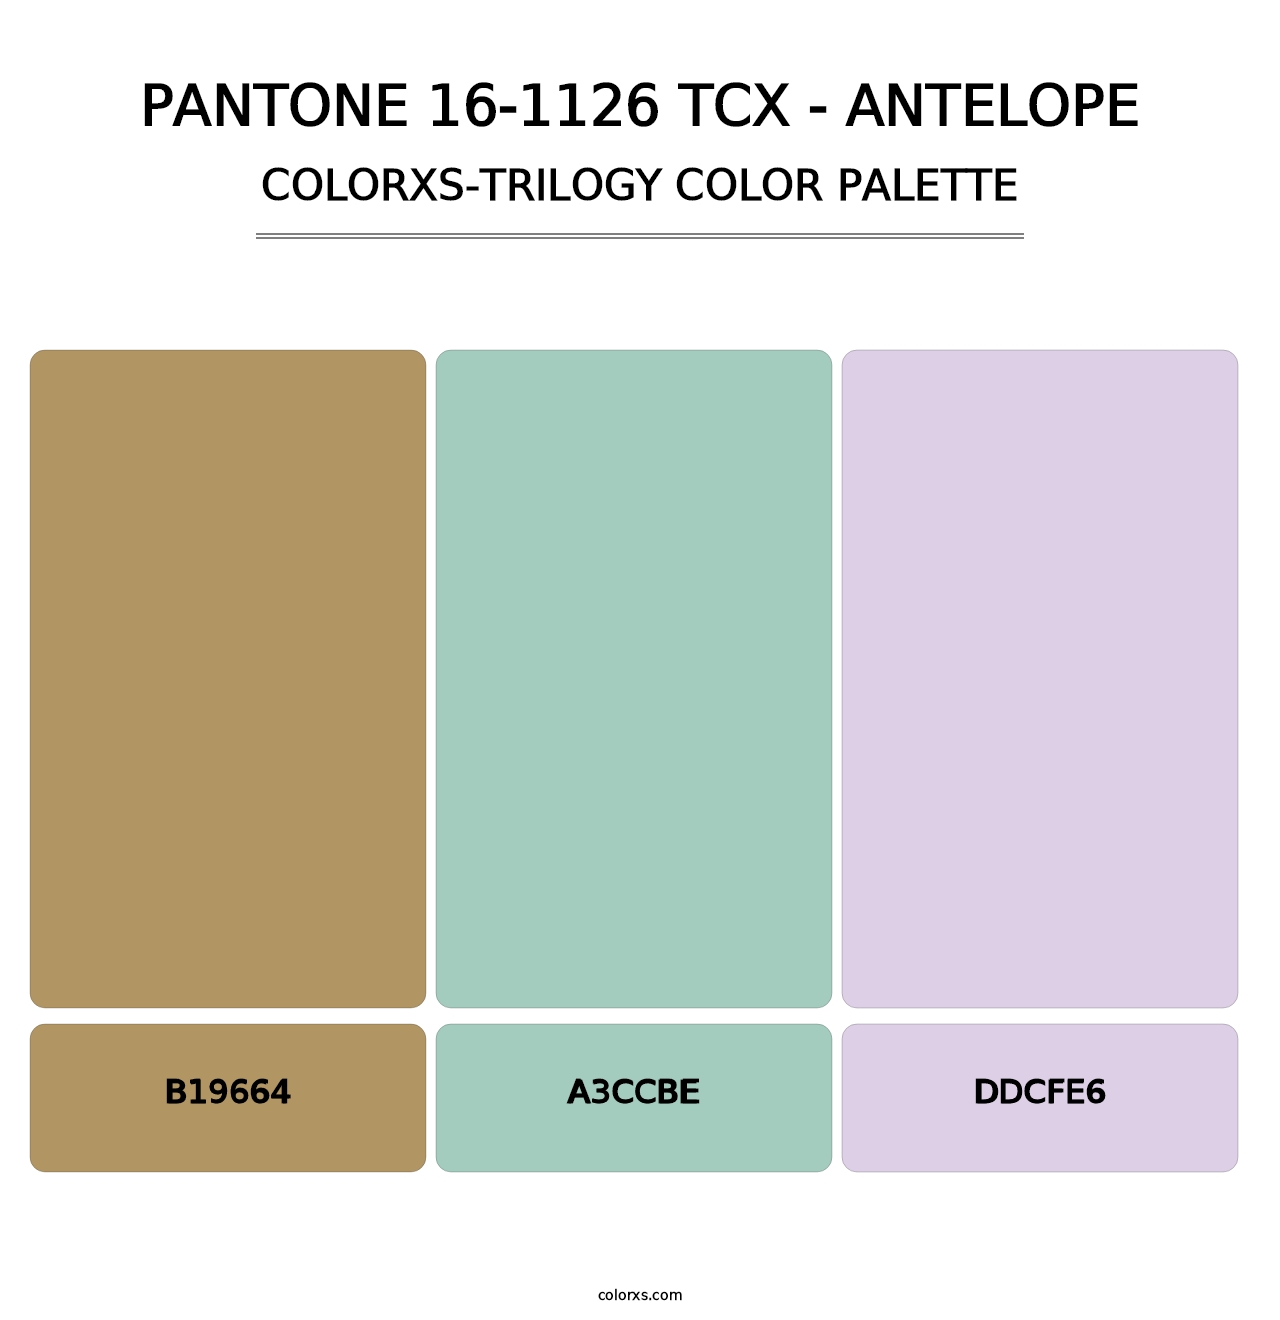 PANTONE 16-1126 TCX - Antelope - Colorxs Trilogy Palette